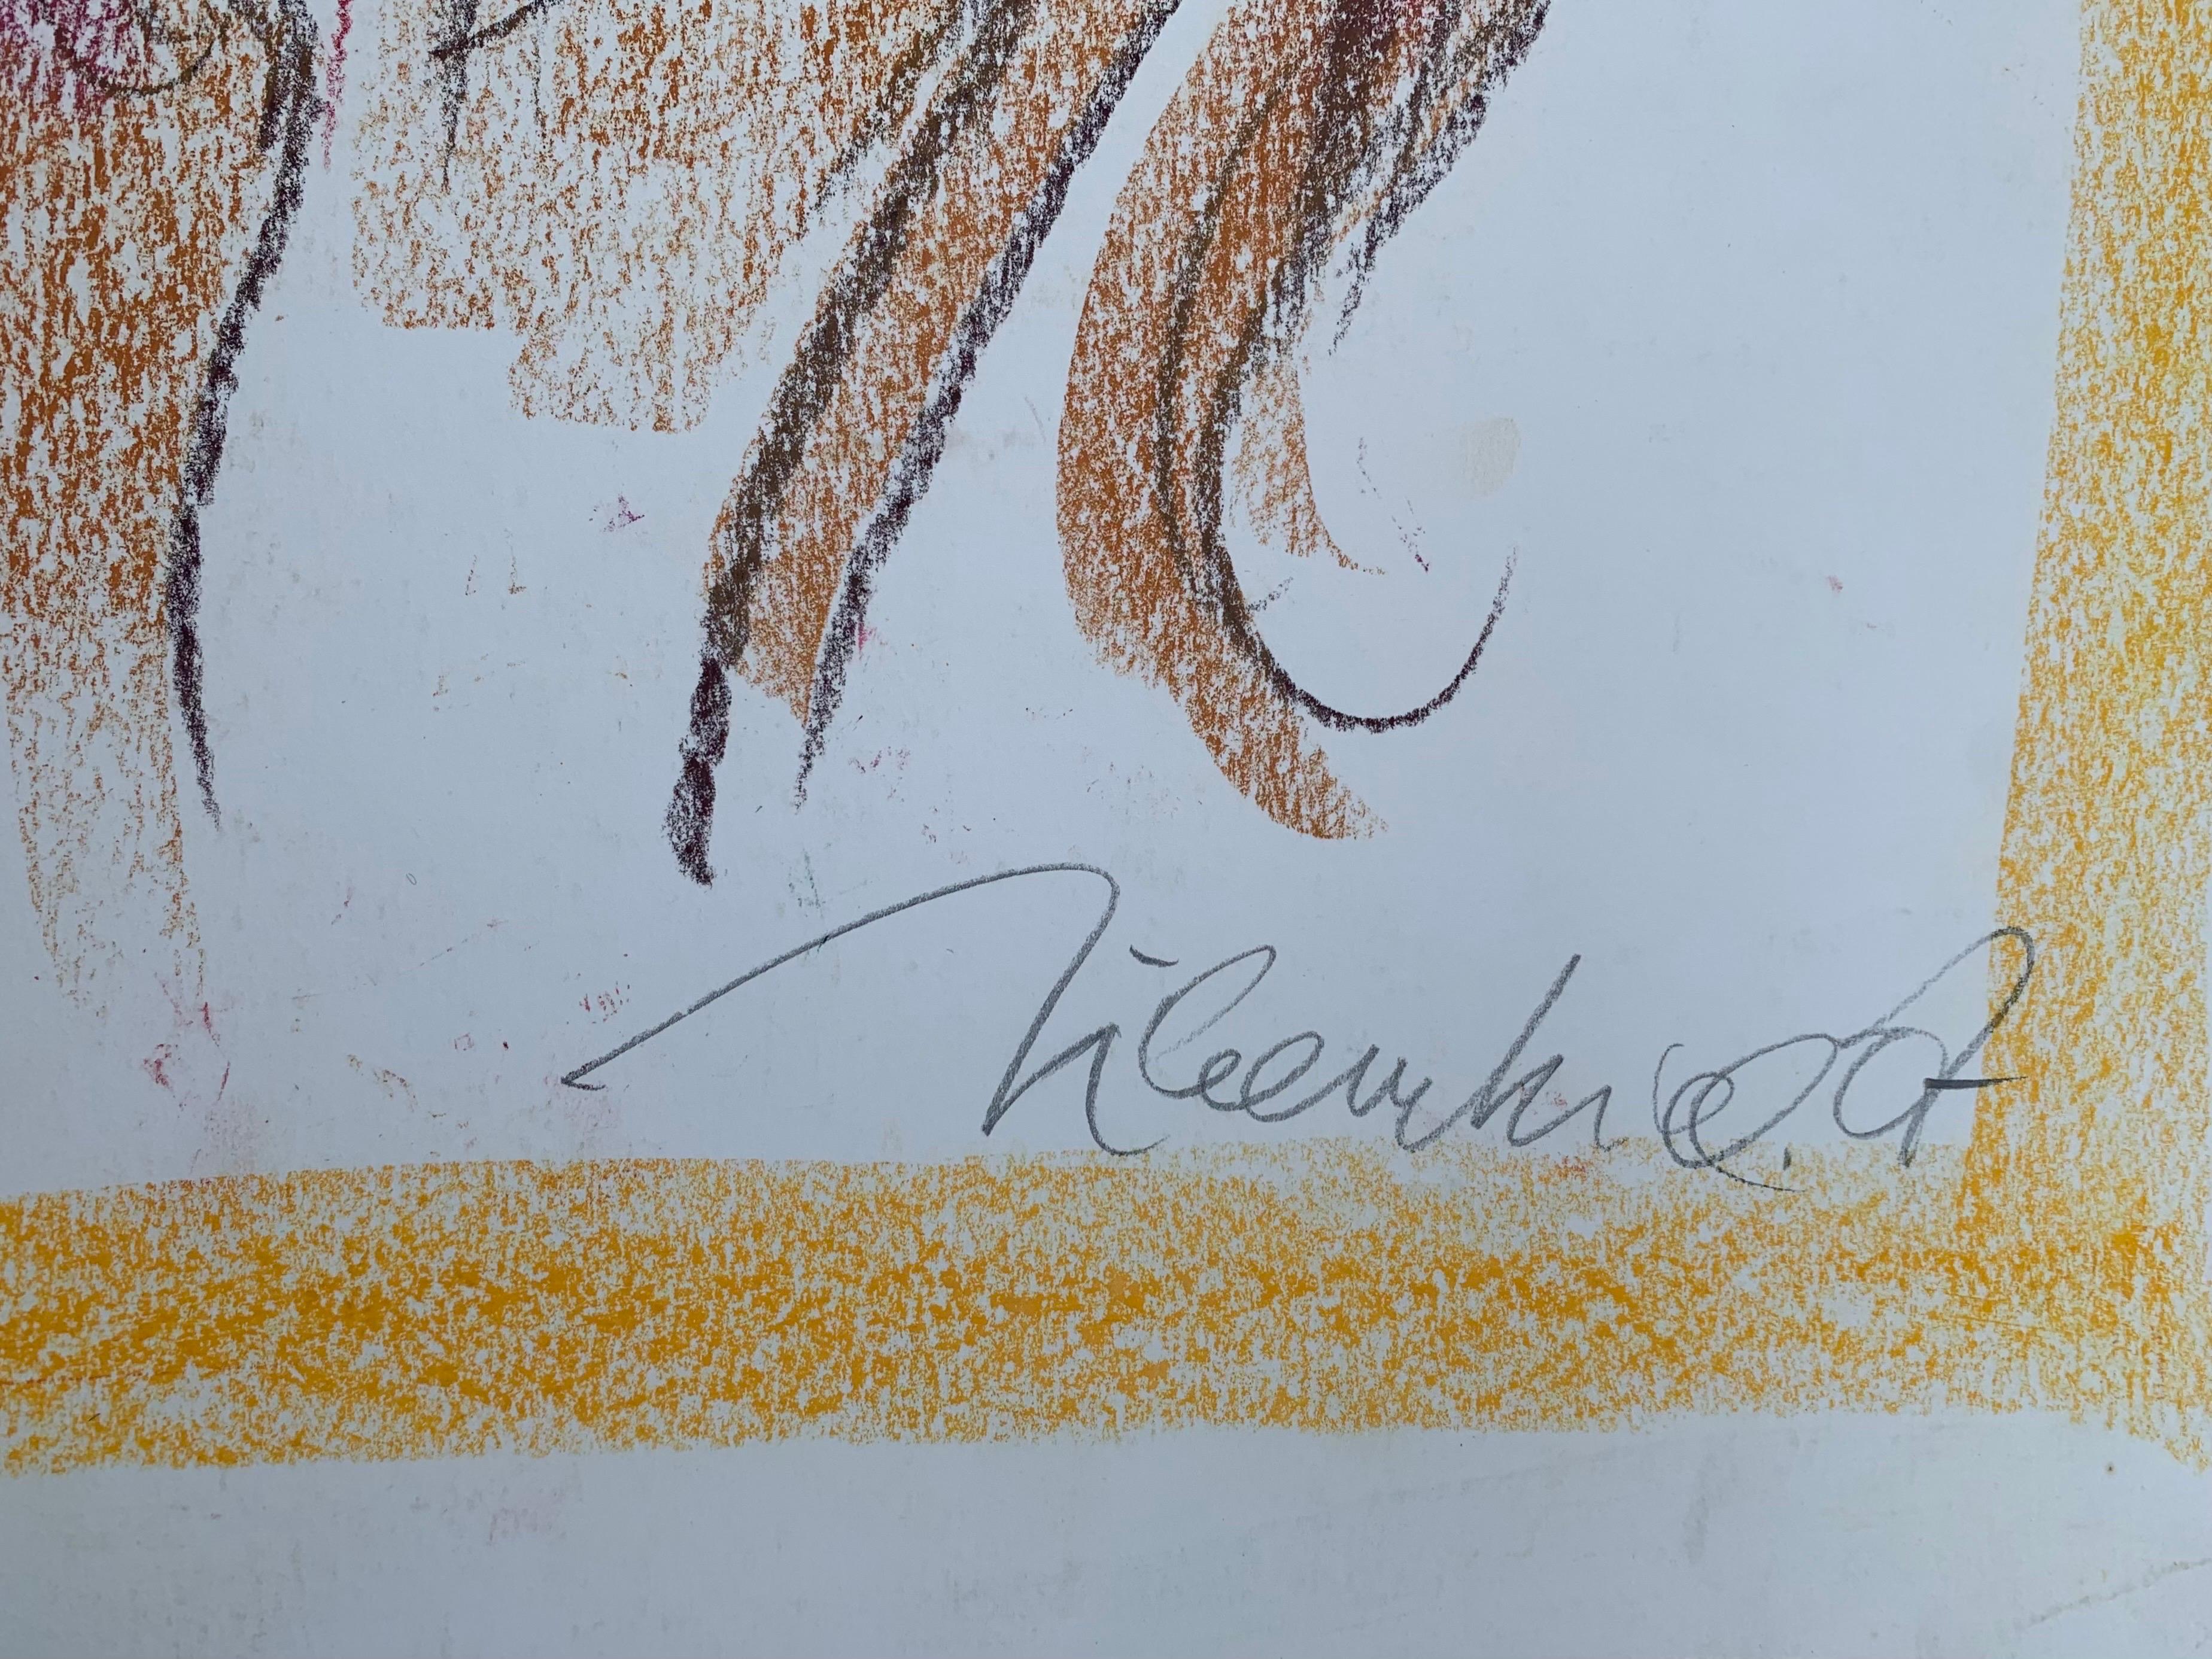 Aquiles montando al centauro Quirón por Marco Silombria.  
Firmado a mano por el artista.

Creado por el artista italiano de Pop - Art Marco Silombria ( Savona, 1936-Albissola, 2017).
El joven, sentado sobre un fuerte centauro, es la imagen de un